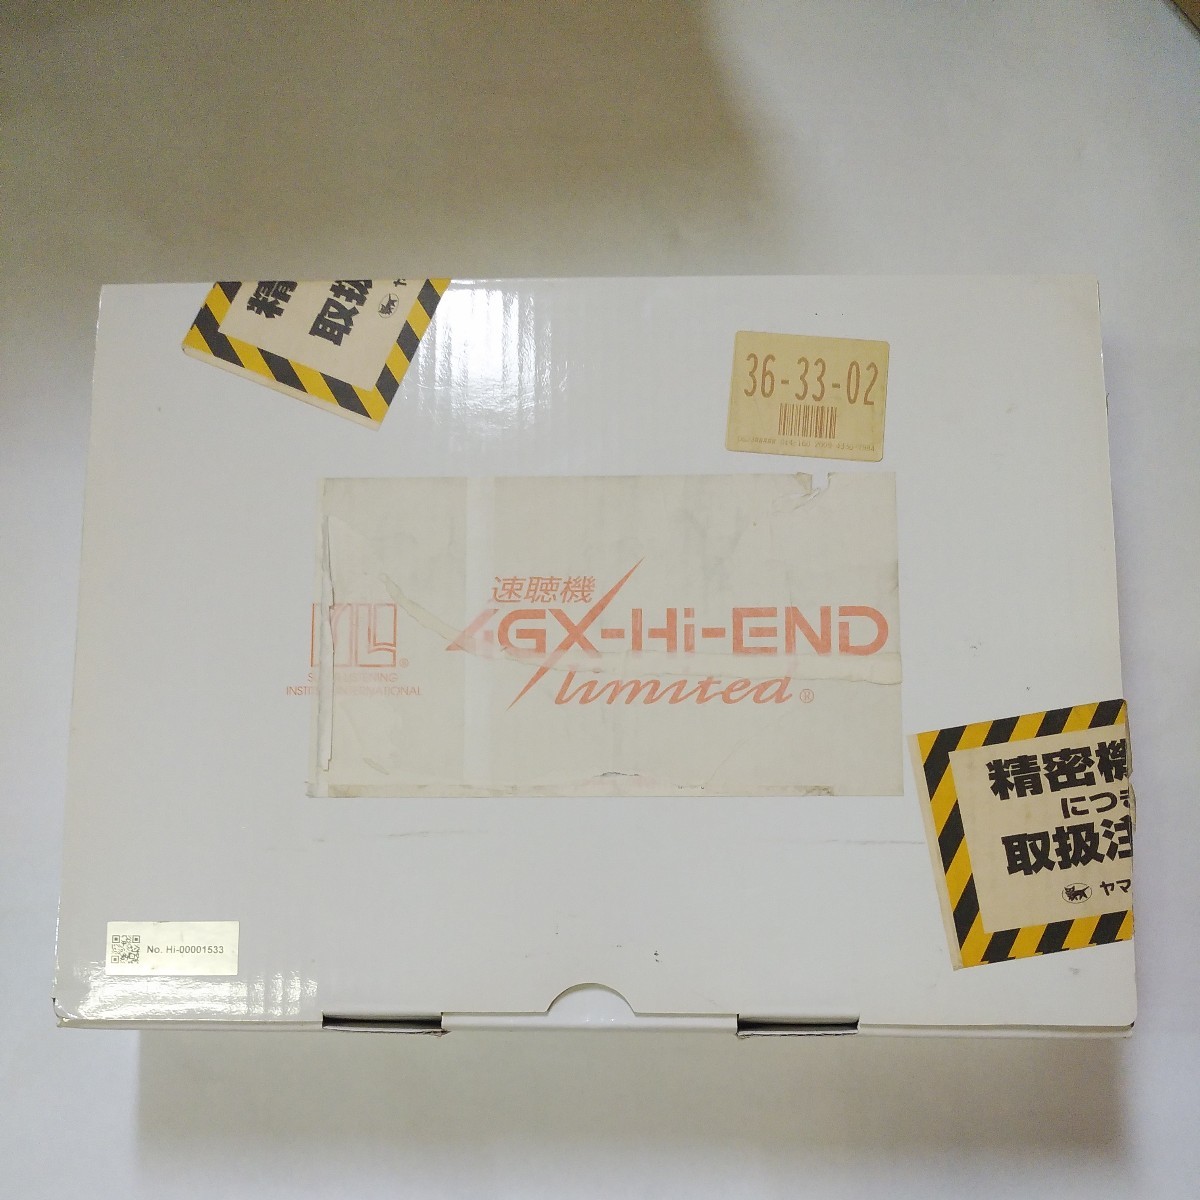 エスエスアイ 4GX-Hi-END Limited 速聴機 SSI CDプレーヤー スピード